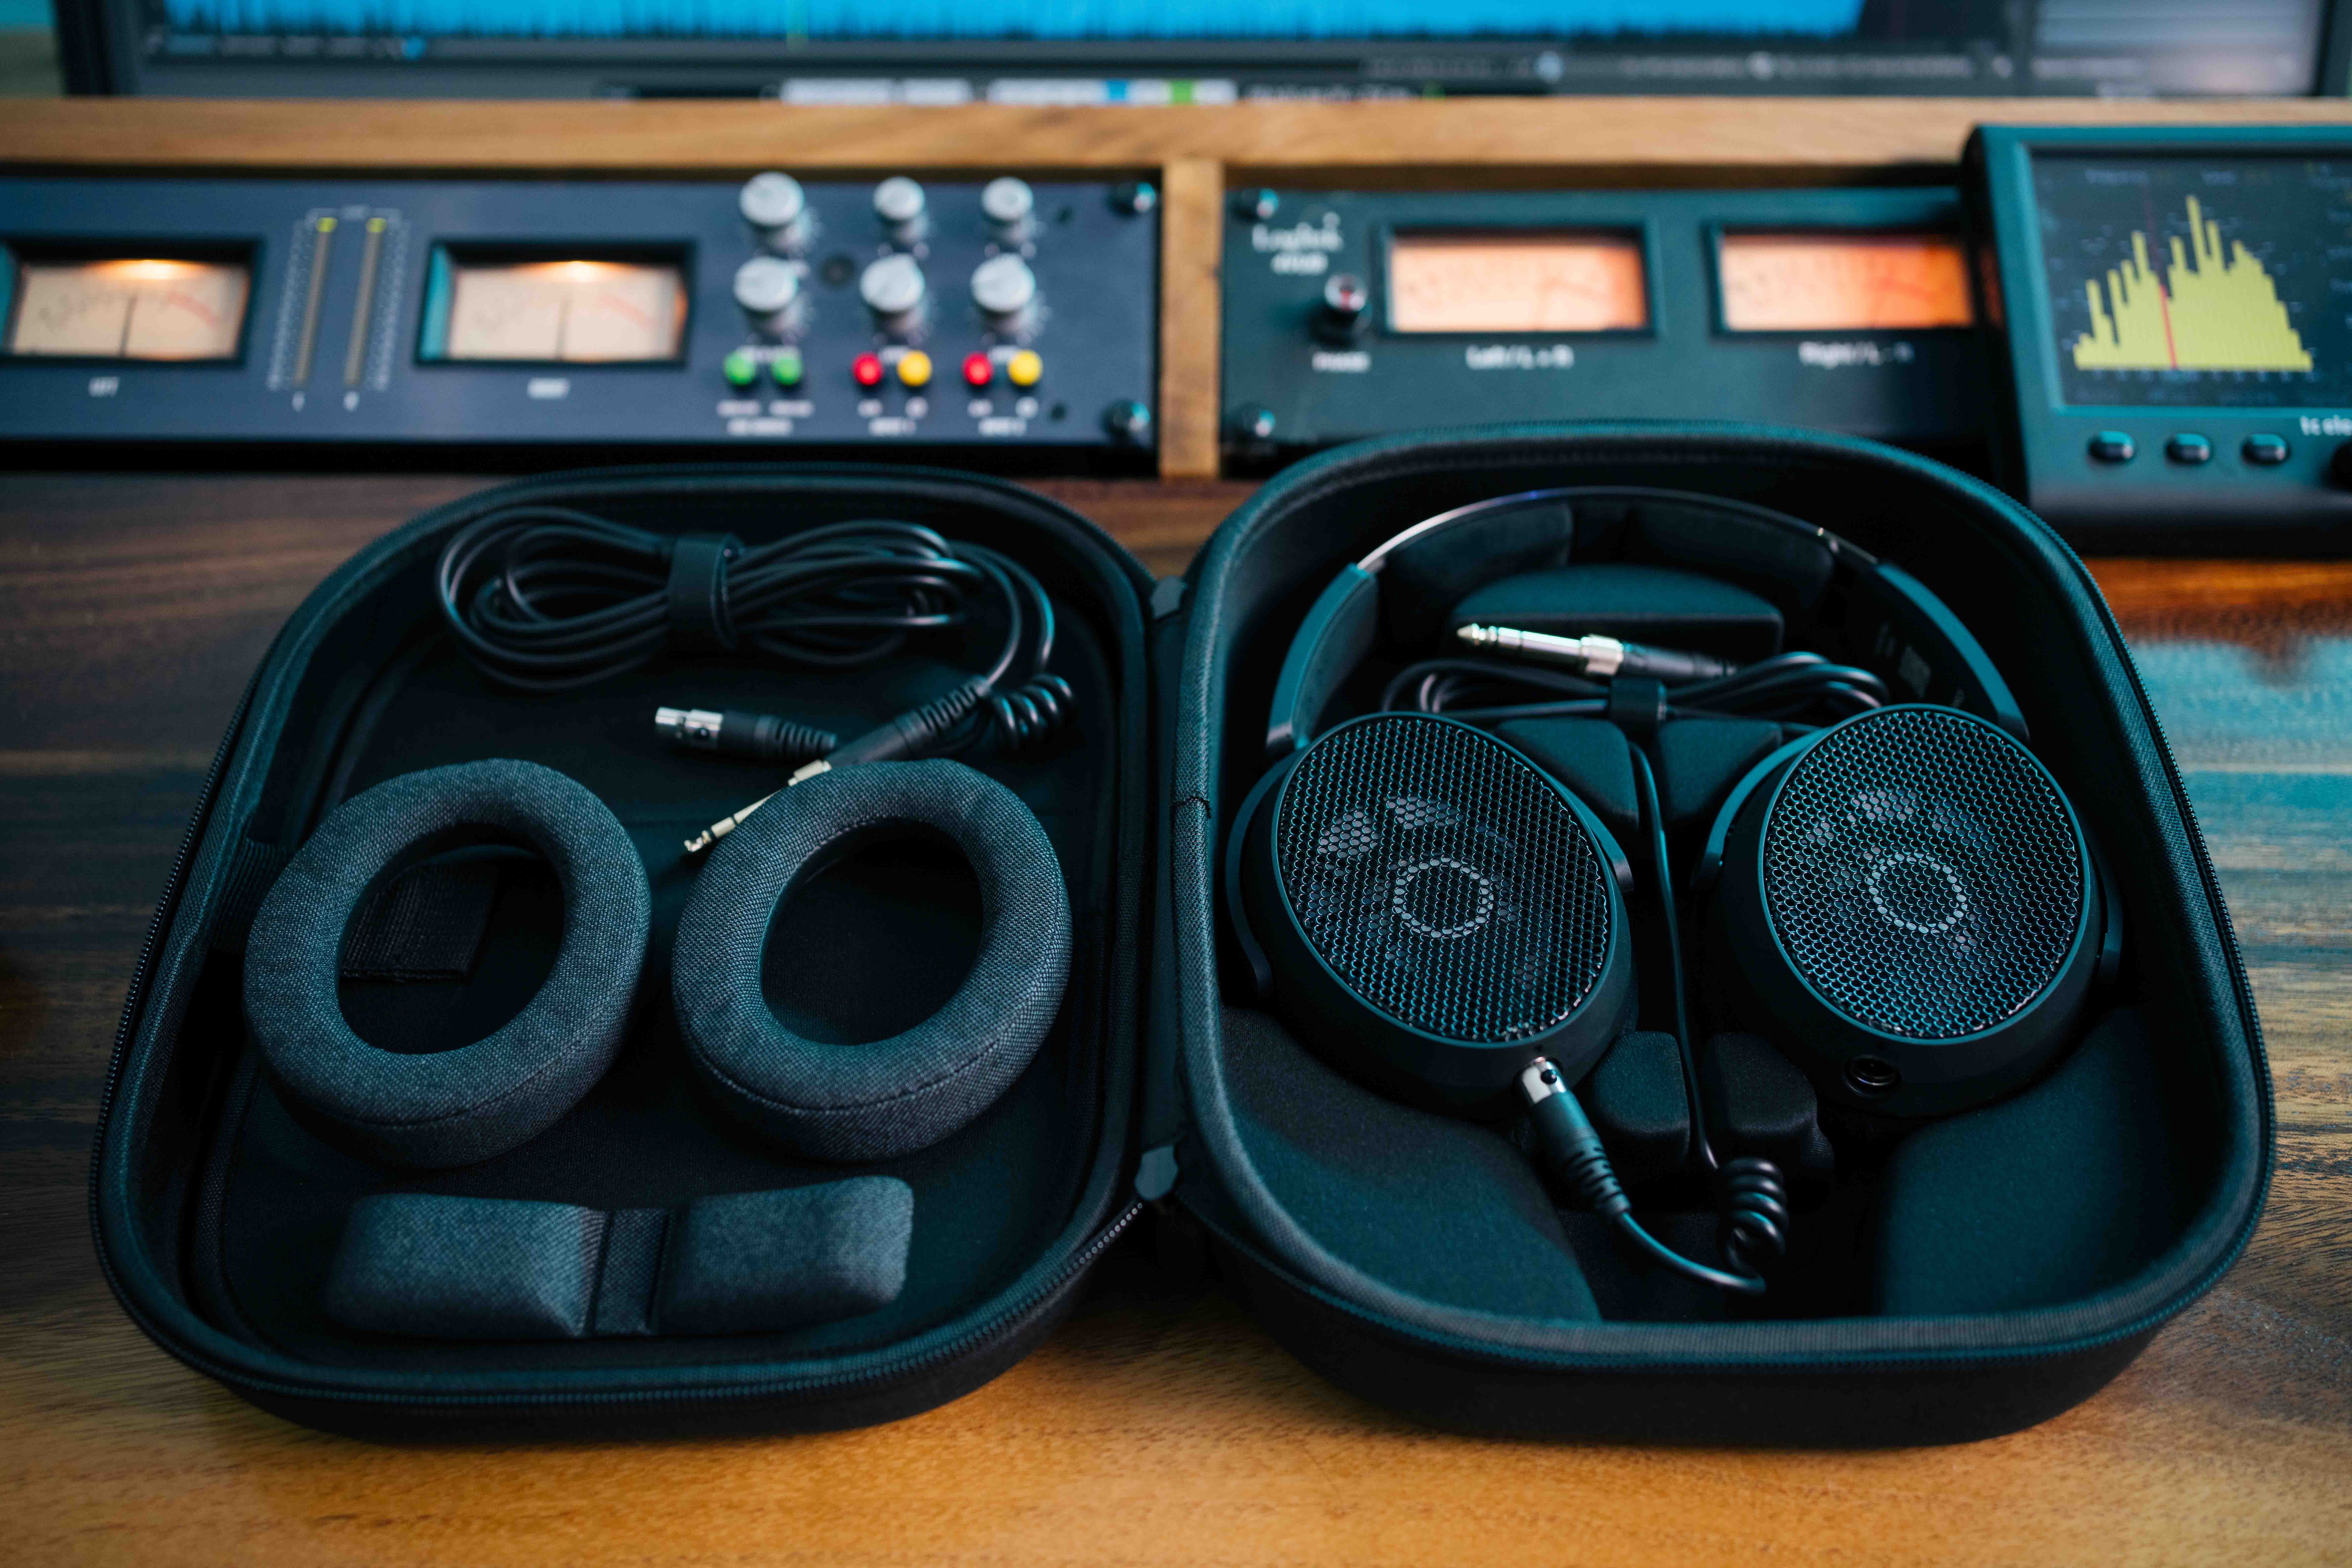 HD 490 PRO Plus (foto) dilengkapi dengan casing, kabel headphone tambahan 3 m, dan headband pad berbahan kain tambahan